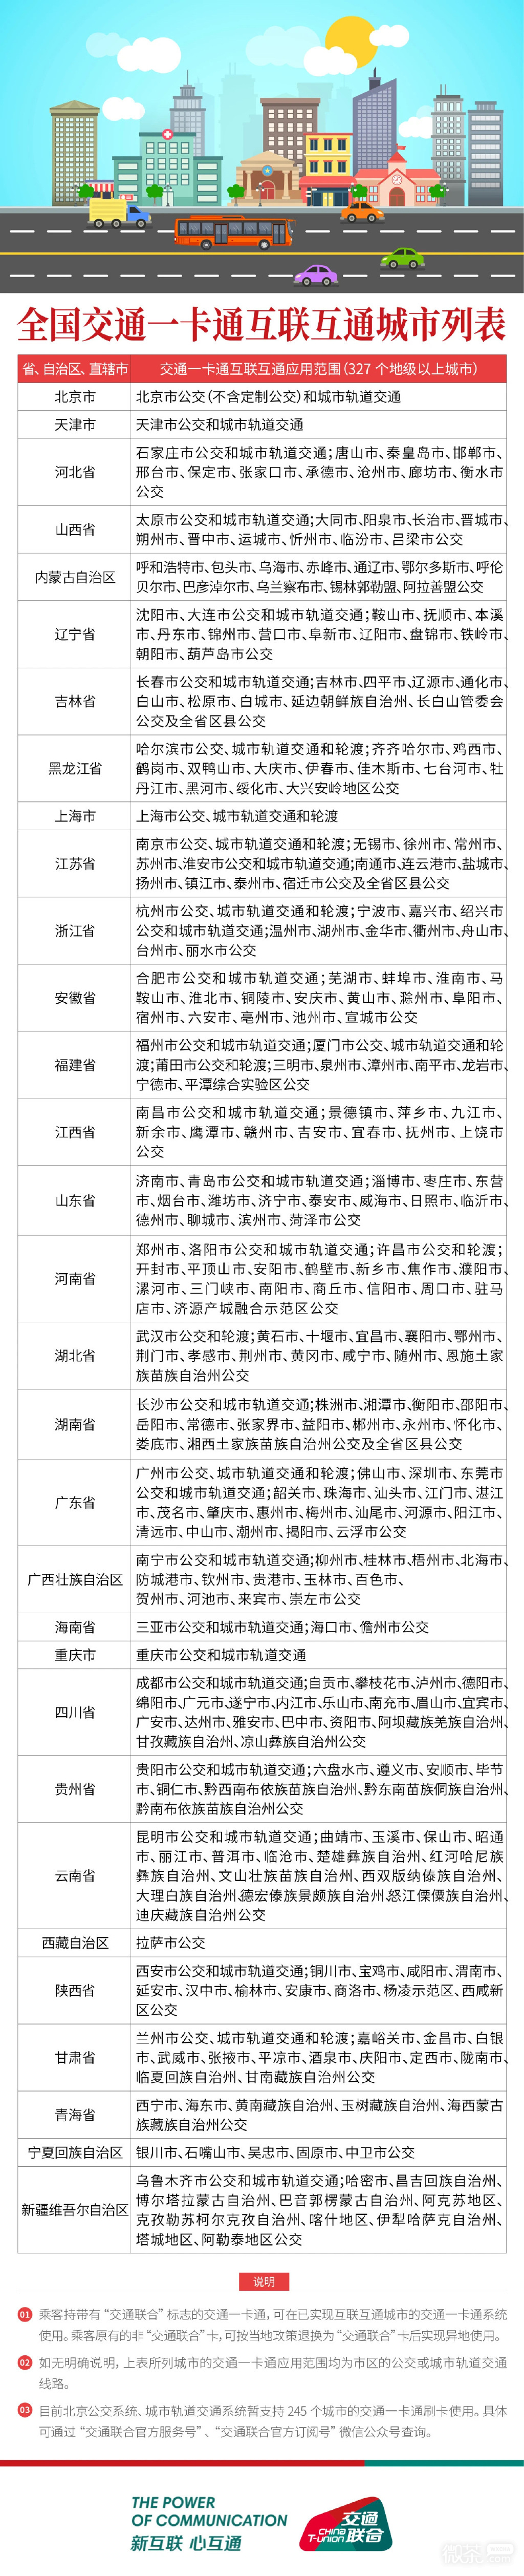 《碧蓝航线》上海公共交通卡获得方法攻略